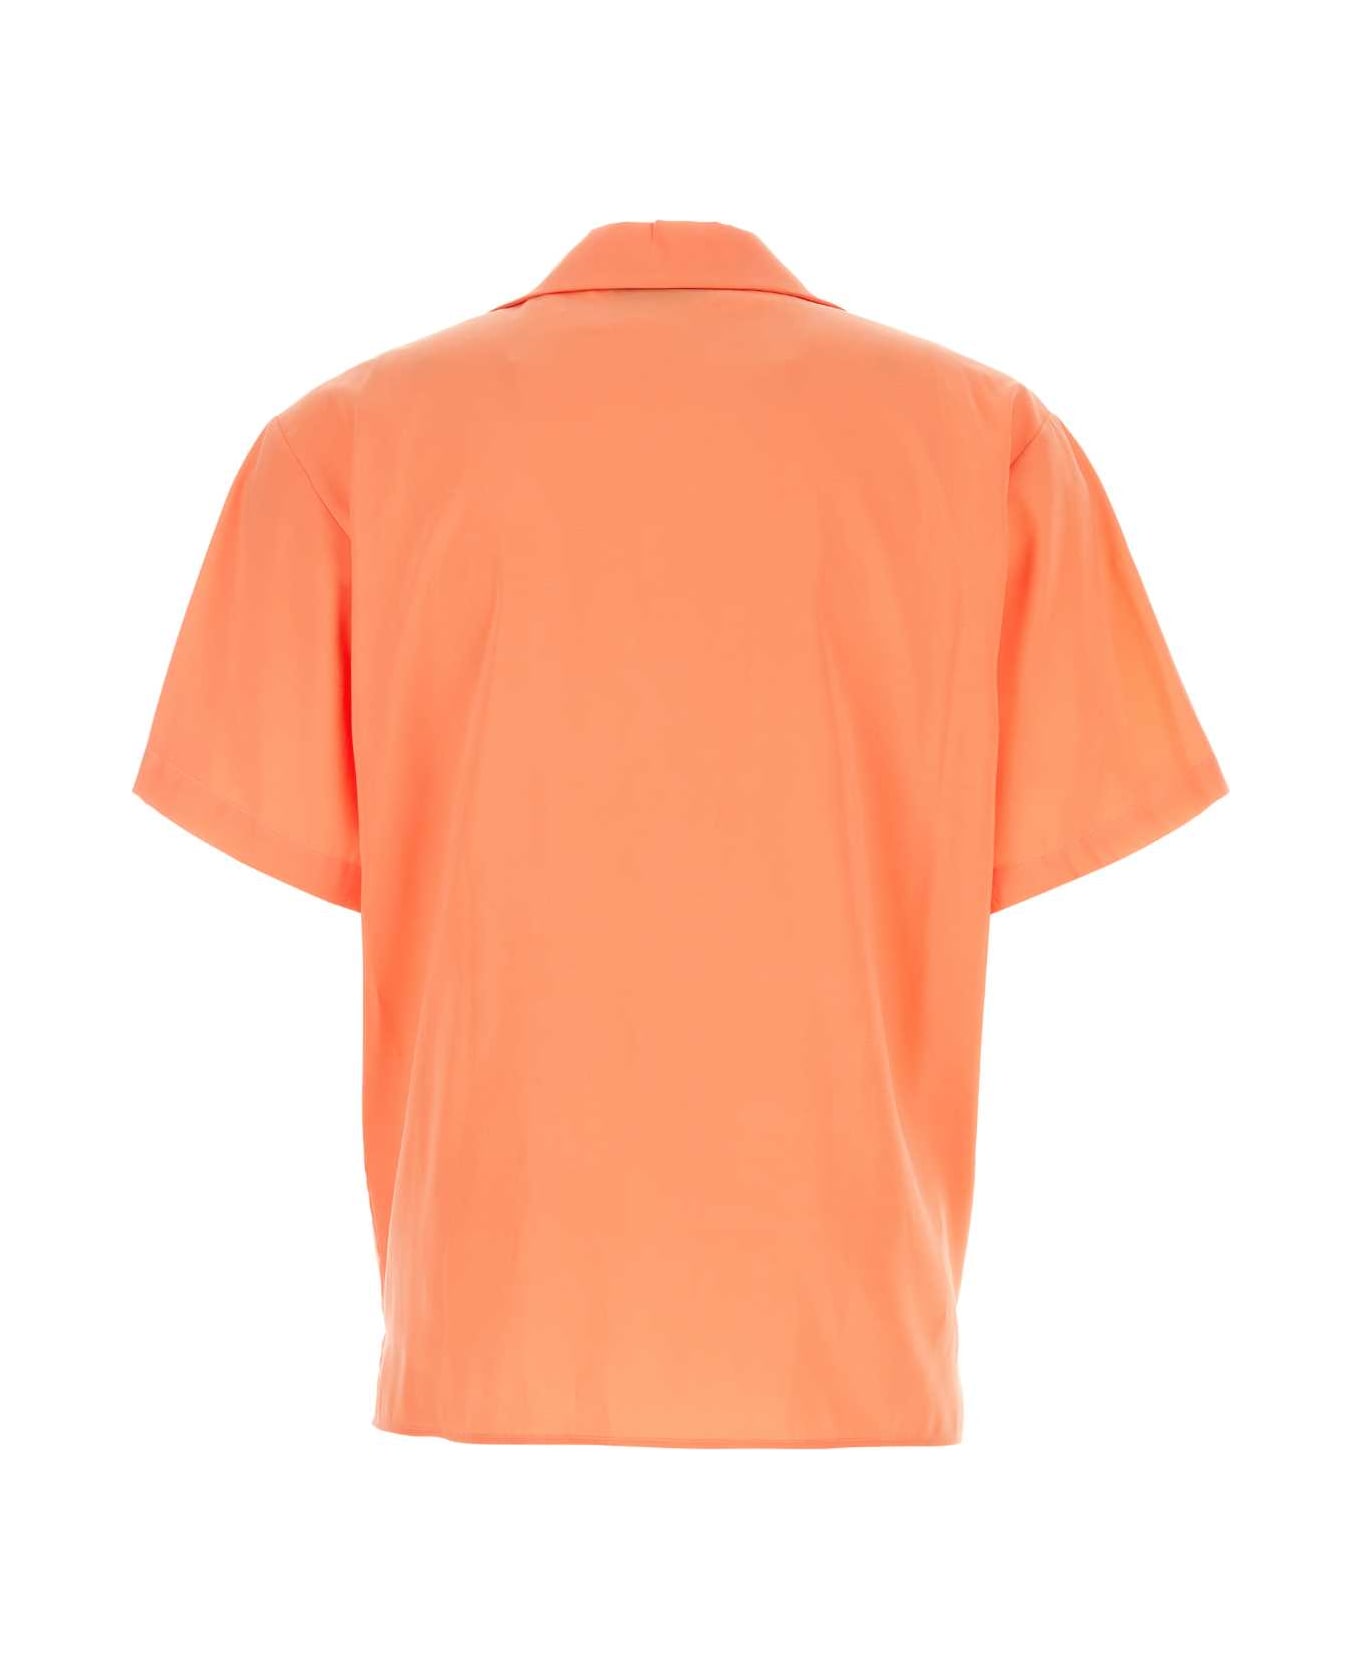 MSGM Peach Viscose Blend Shirt - 10 シャツ